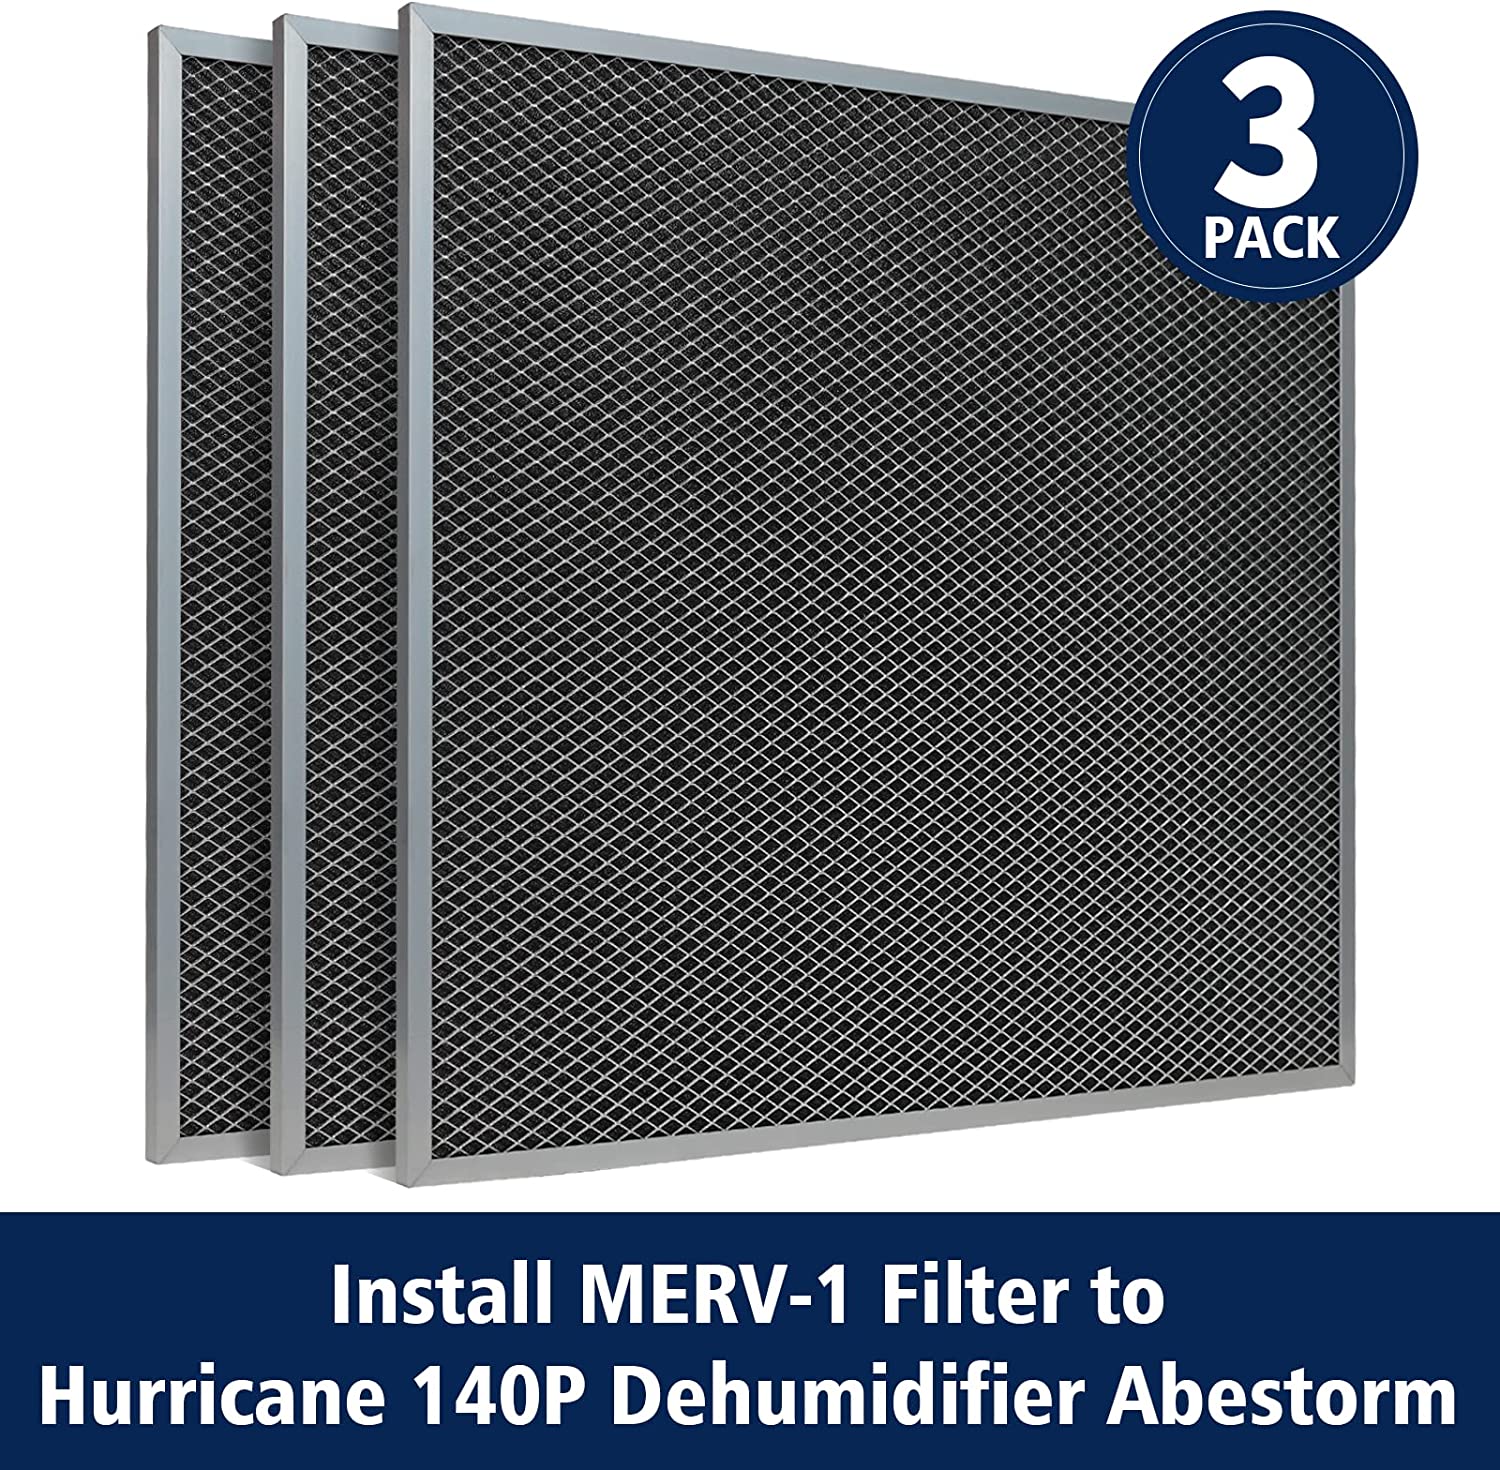 Abestorm 3 Pack MERV-1 Filter for Hurricane 140p